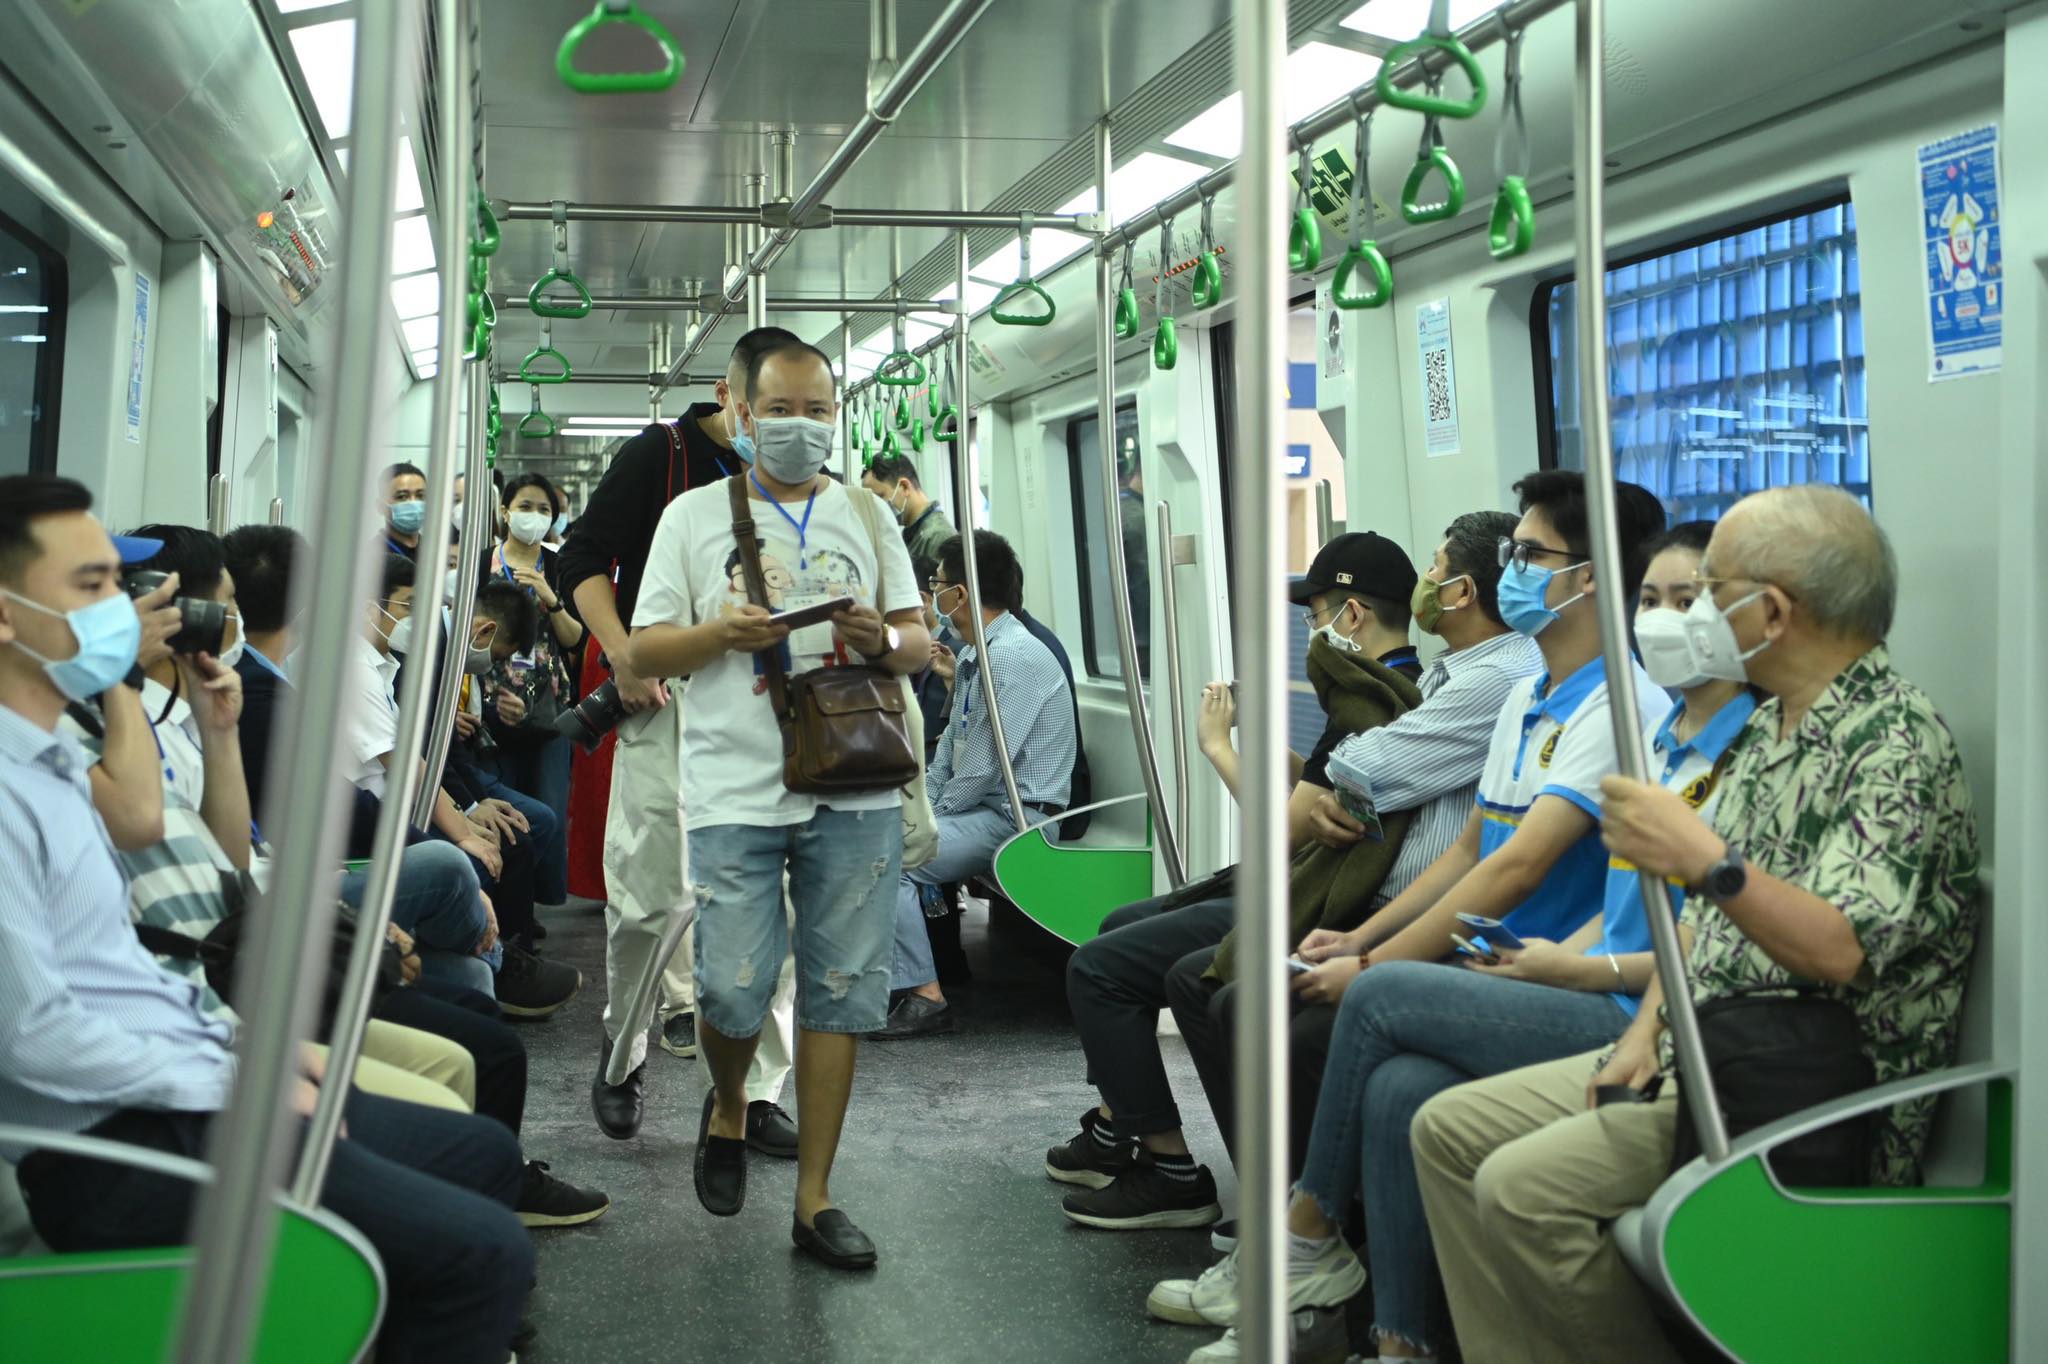 TGĐ Metro Hà Nội nói về giải pháp giãn cách khi đi tàu Cát Linh - Hà Đông - 1